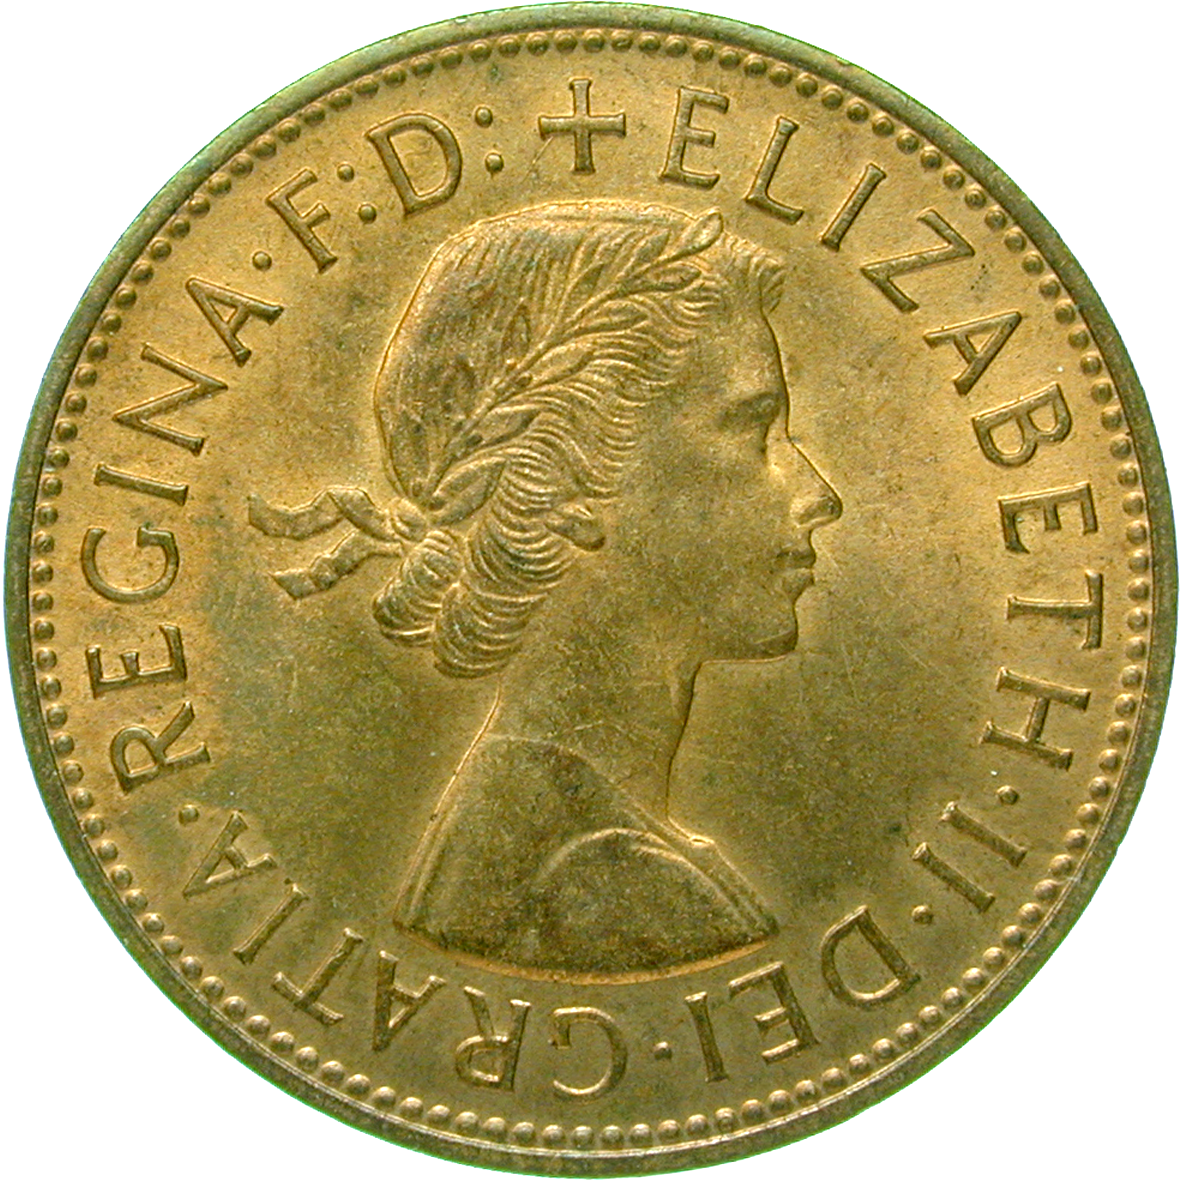 Vereinigtes Königreich Grossbritannien, Elisabeth II., 1 Penny 1967 (obverse)